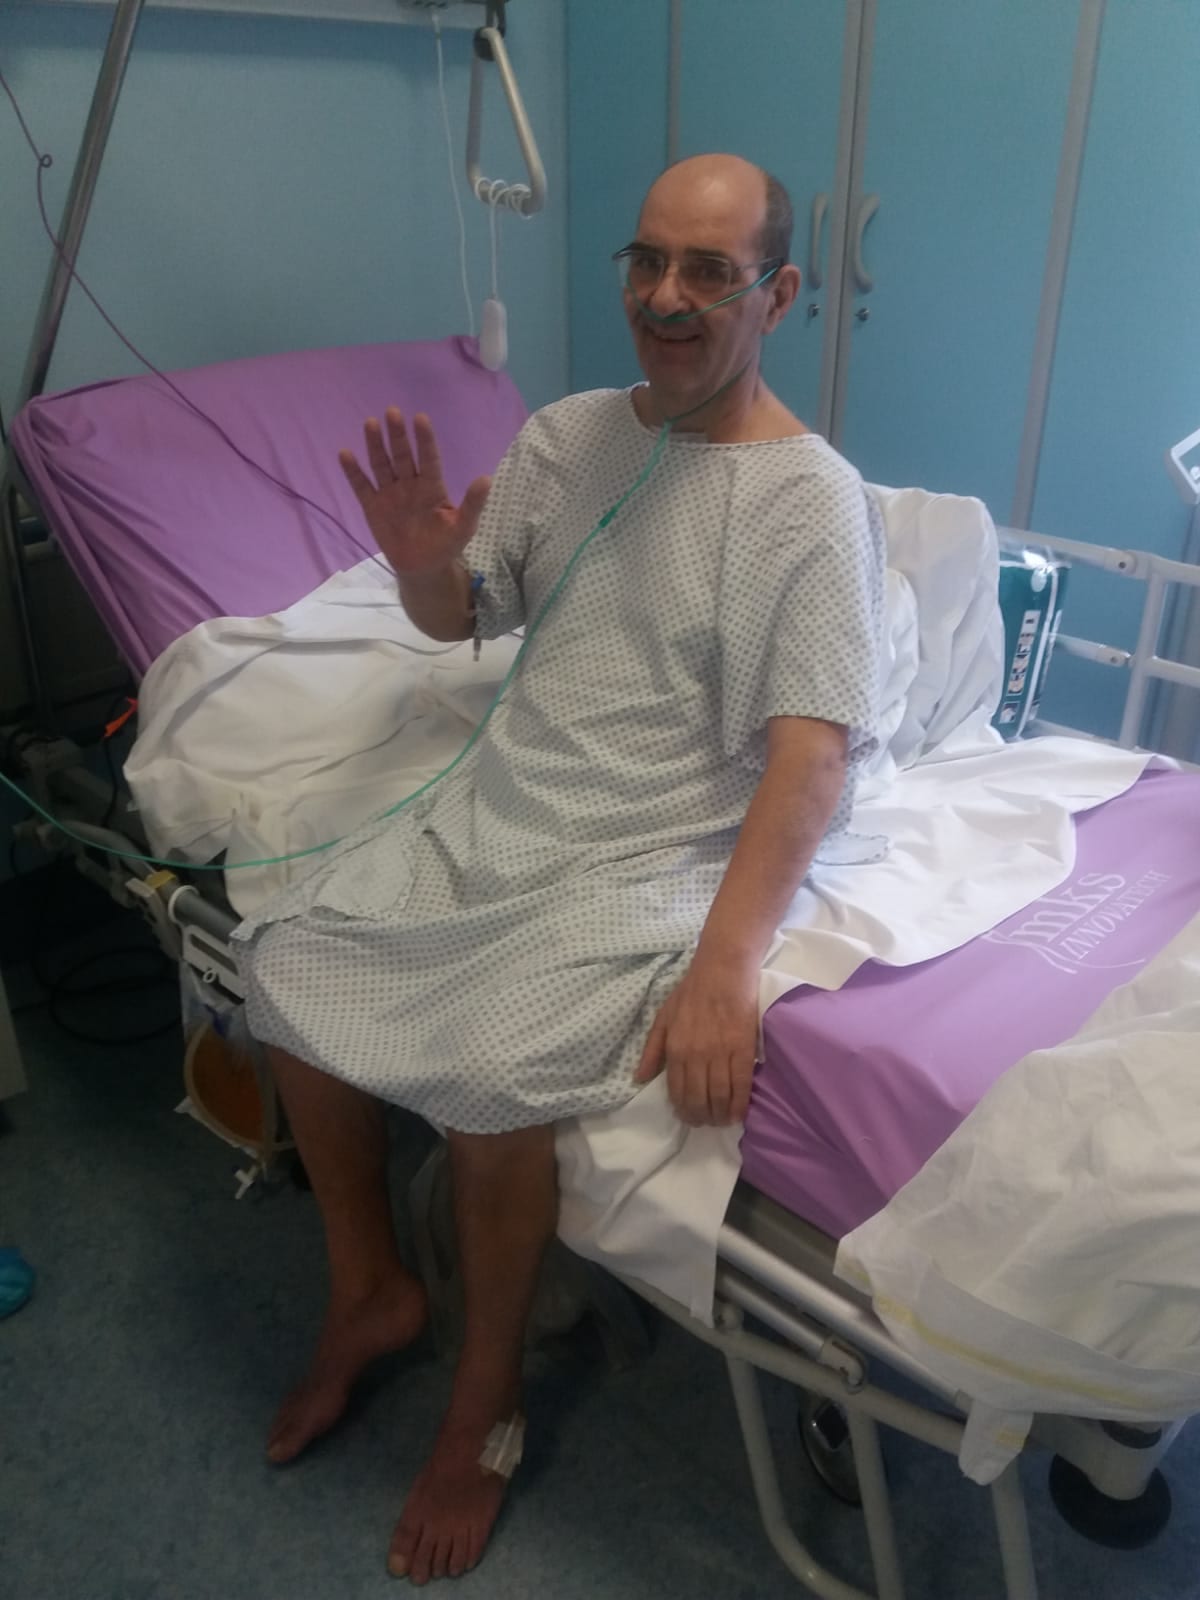 Saronno ospedale, lotta 95 giorni col covid: la storia di Massimo Allievi e il suo grazie